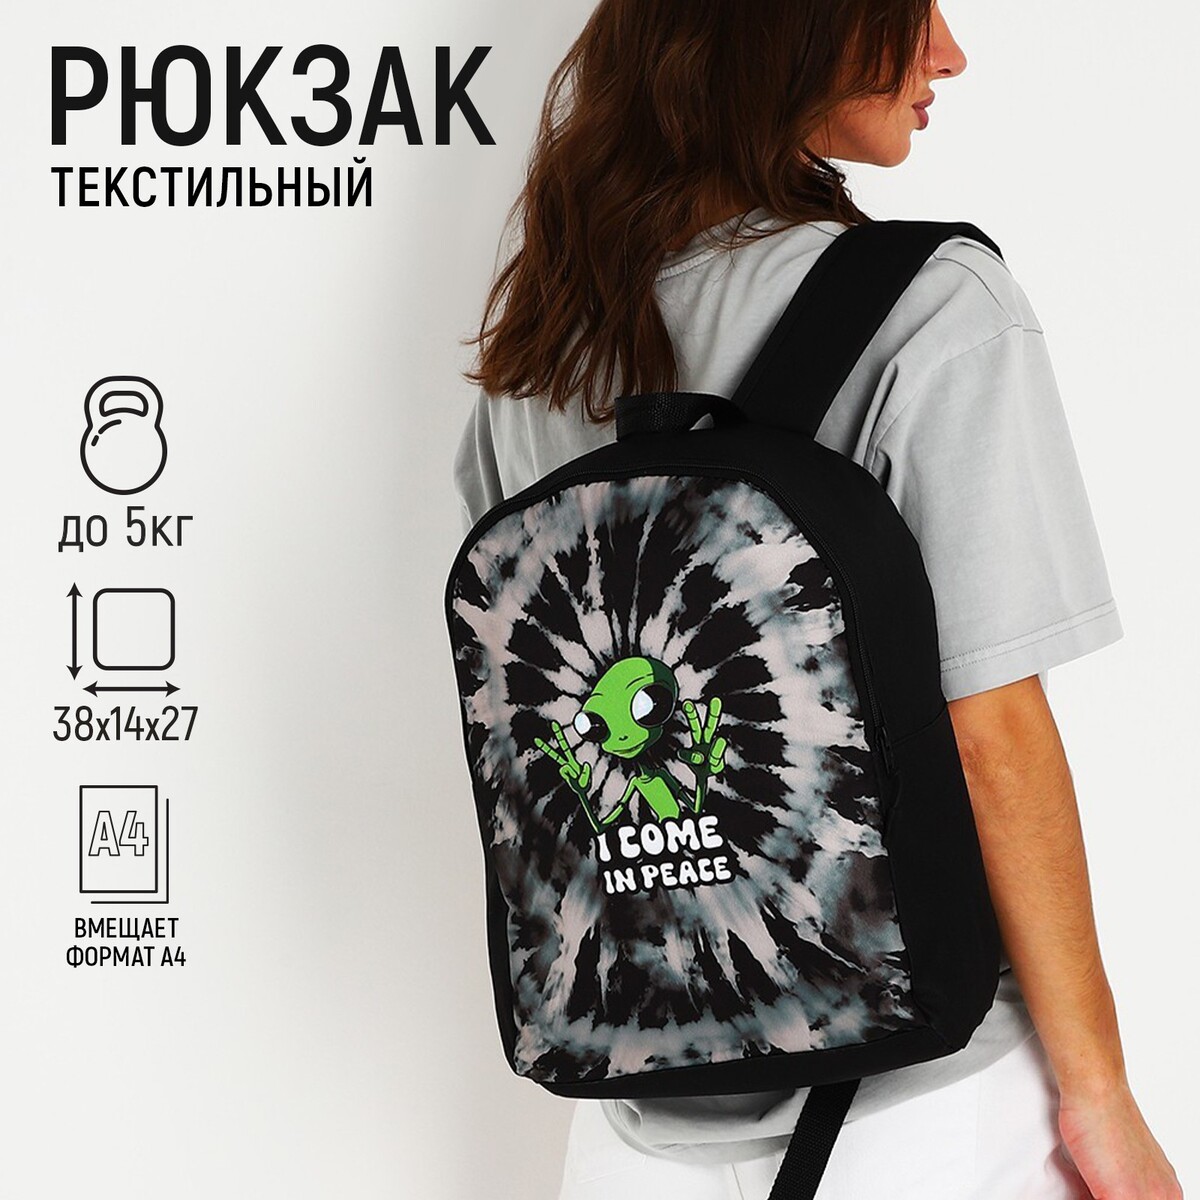 Рюкзак текстильный инопланетянин, 38х14х27 см, цвет черный рюкзак текстильный nazamok 38х14х27 см